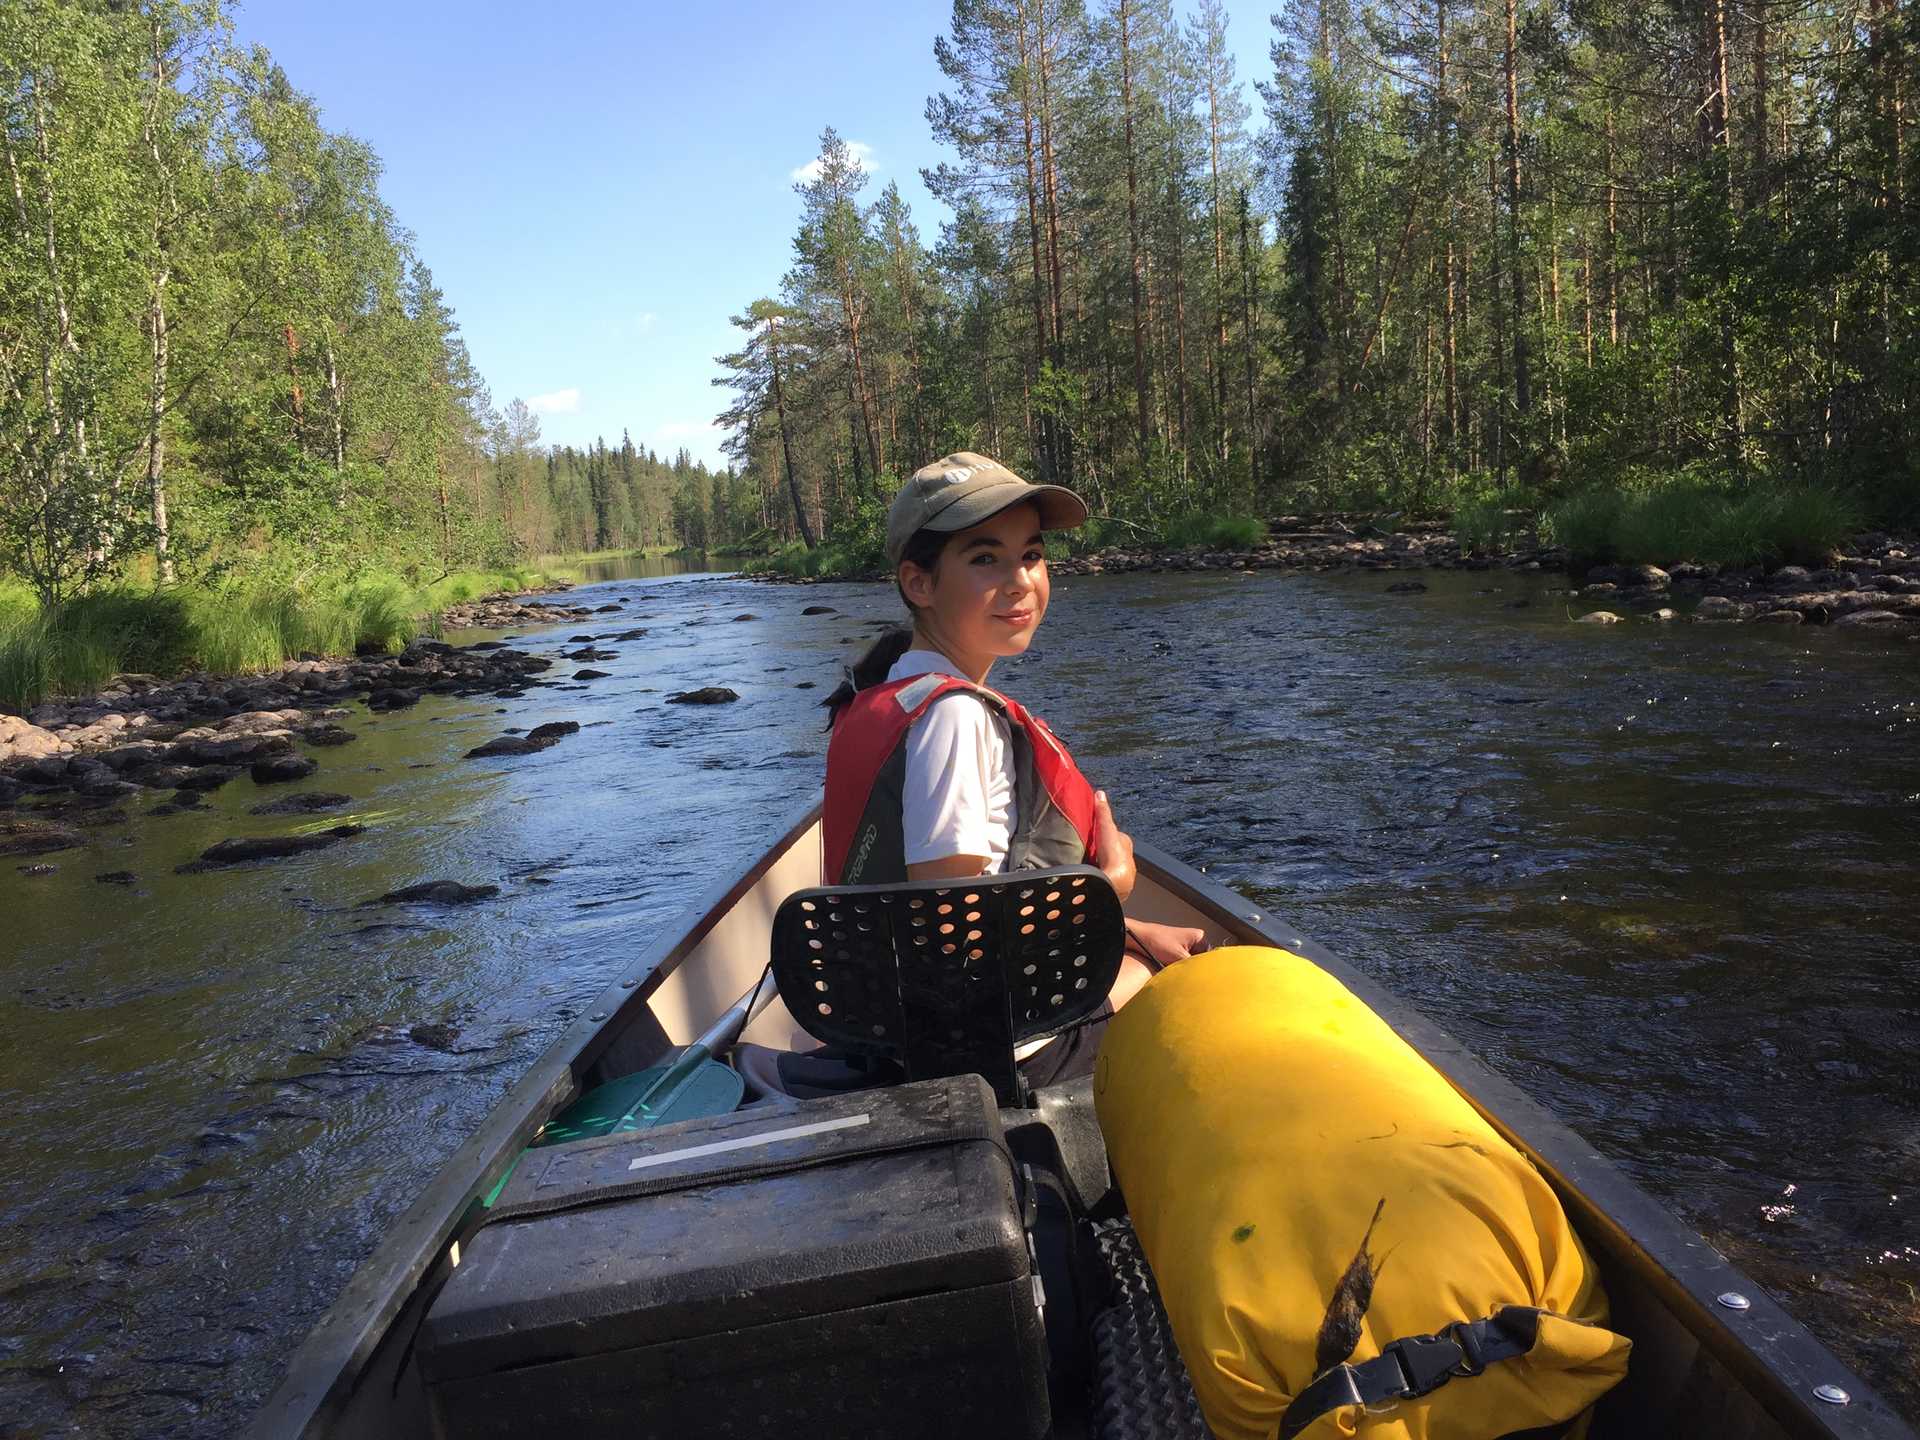 Enfant faisant du canoë sur un lac en Finlande